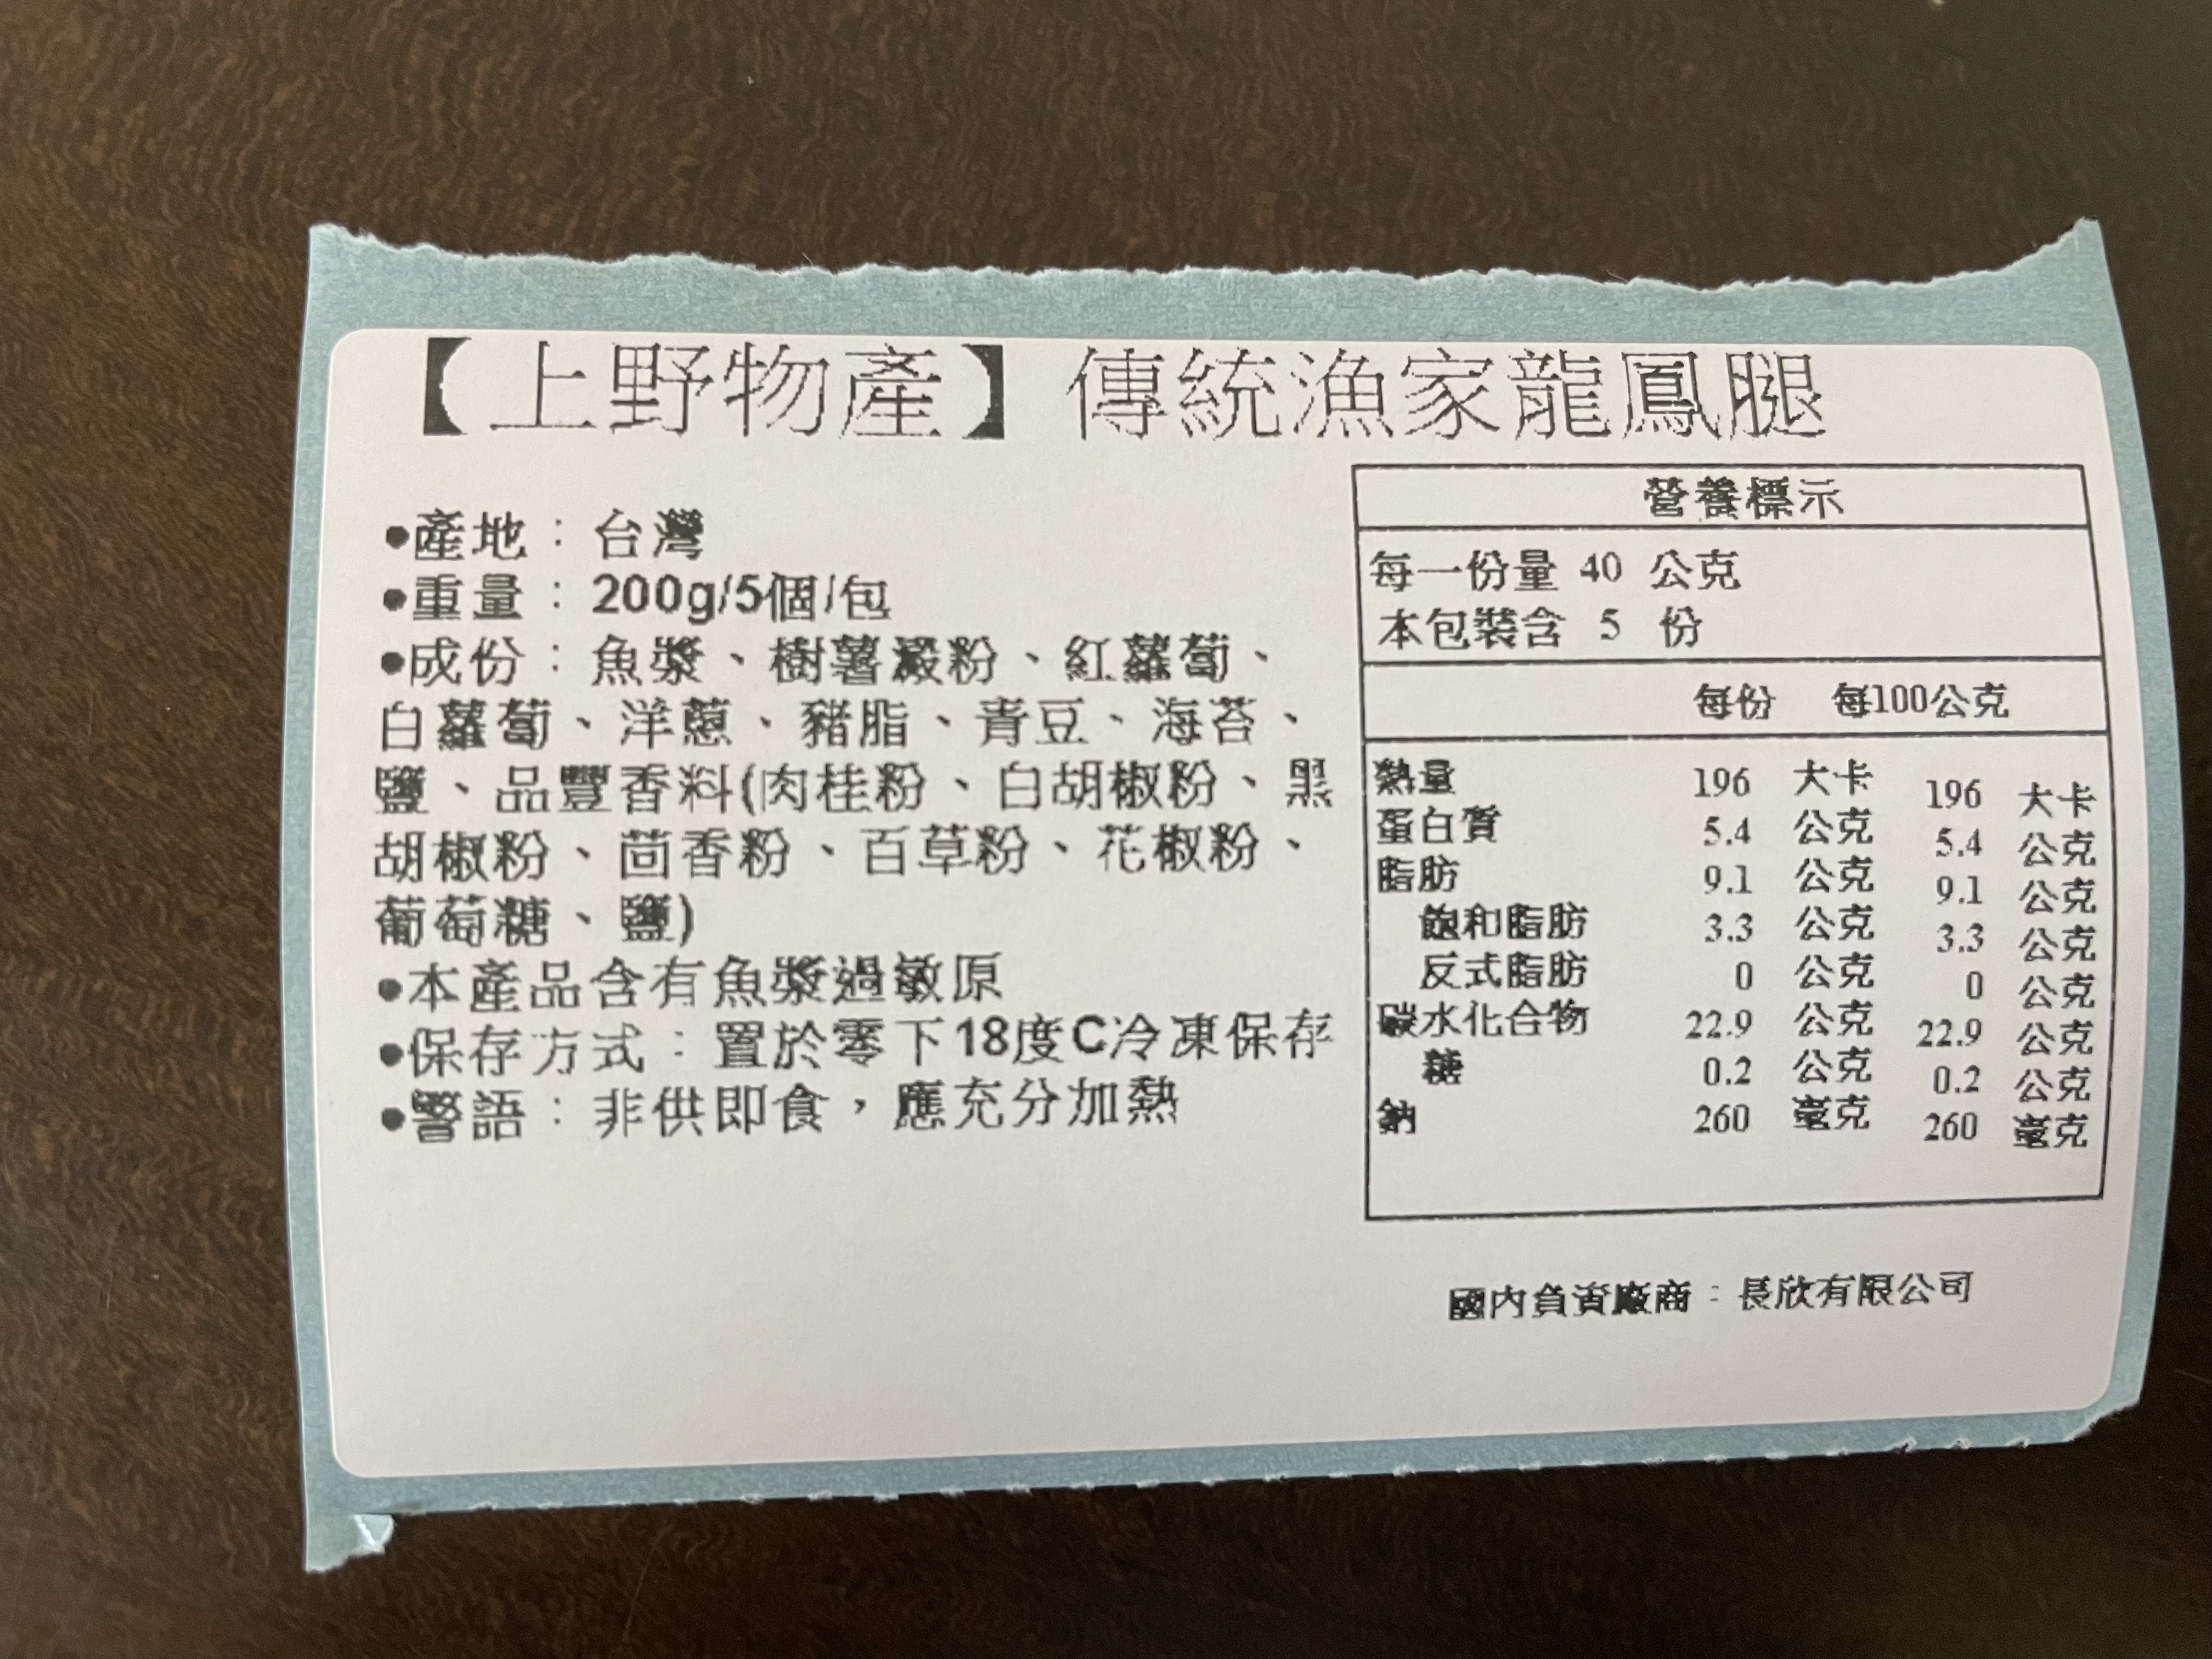       【上野物產】傳統漁家龍鳳腿 x14包(200g/5個/包)